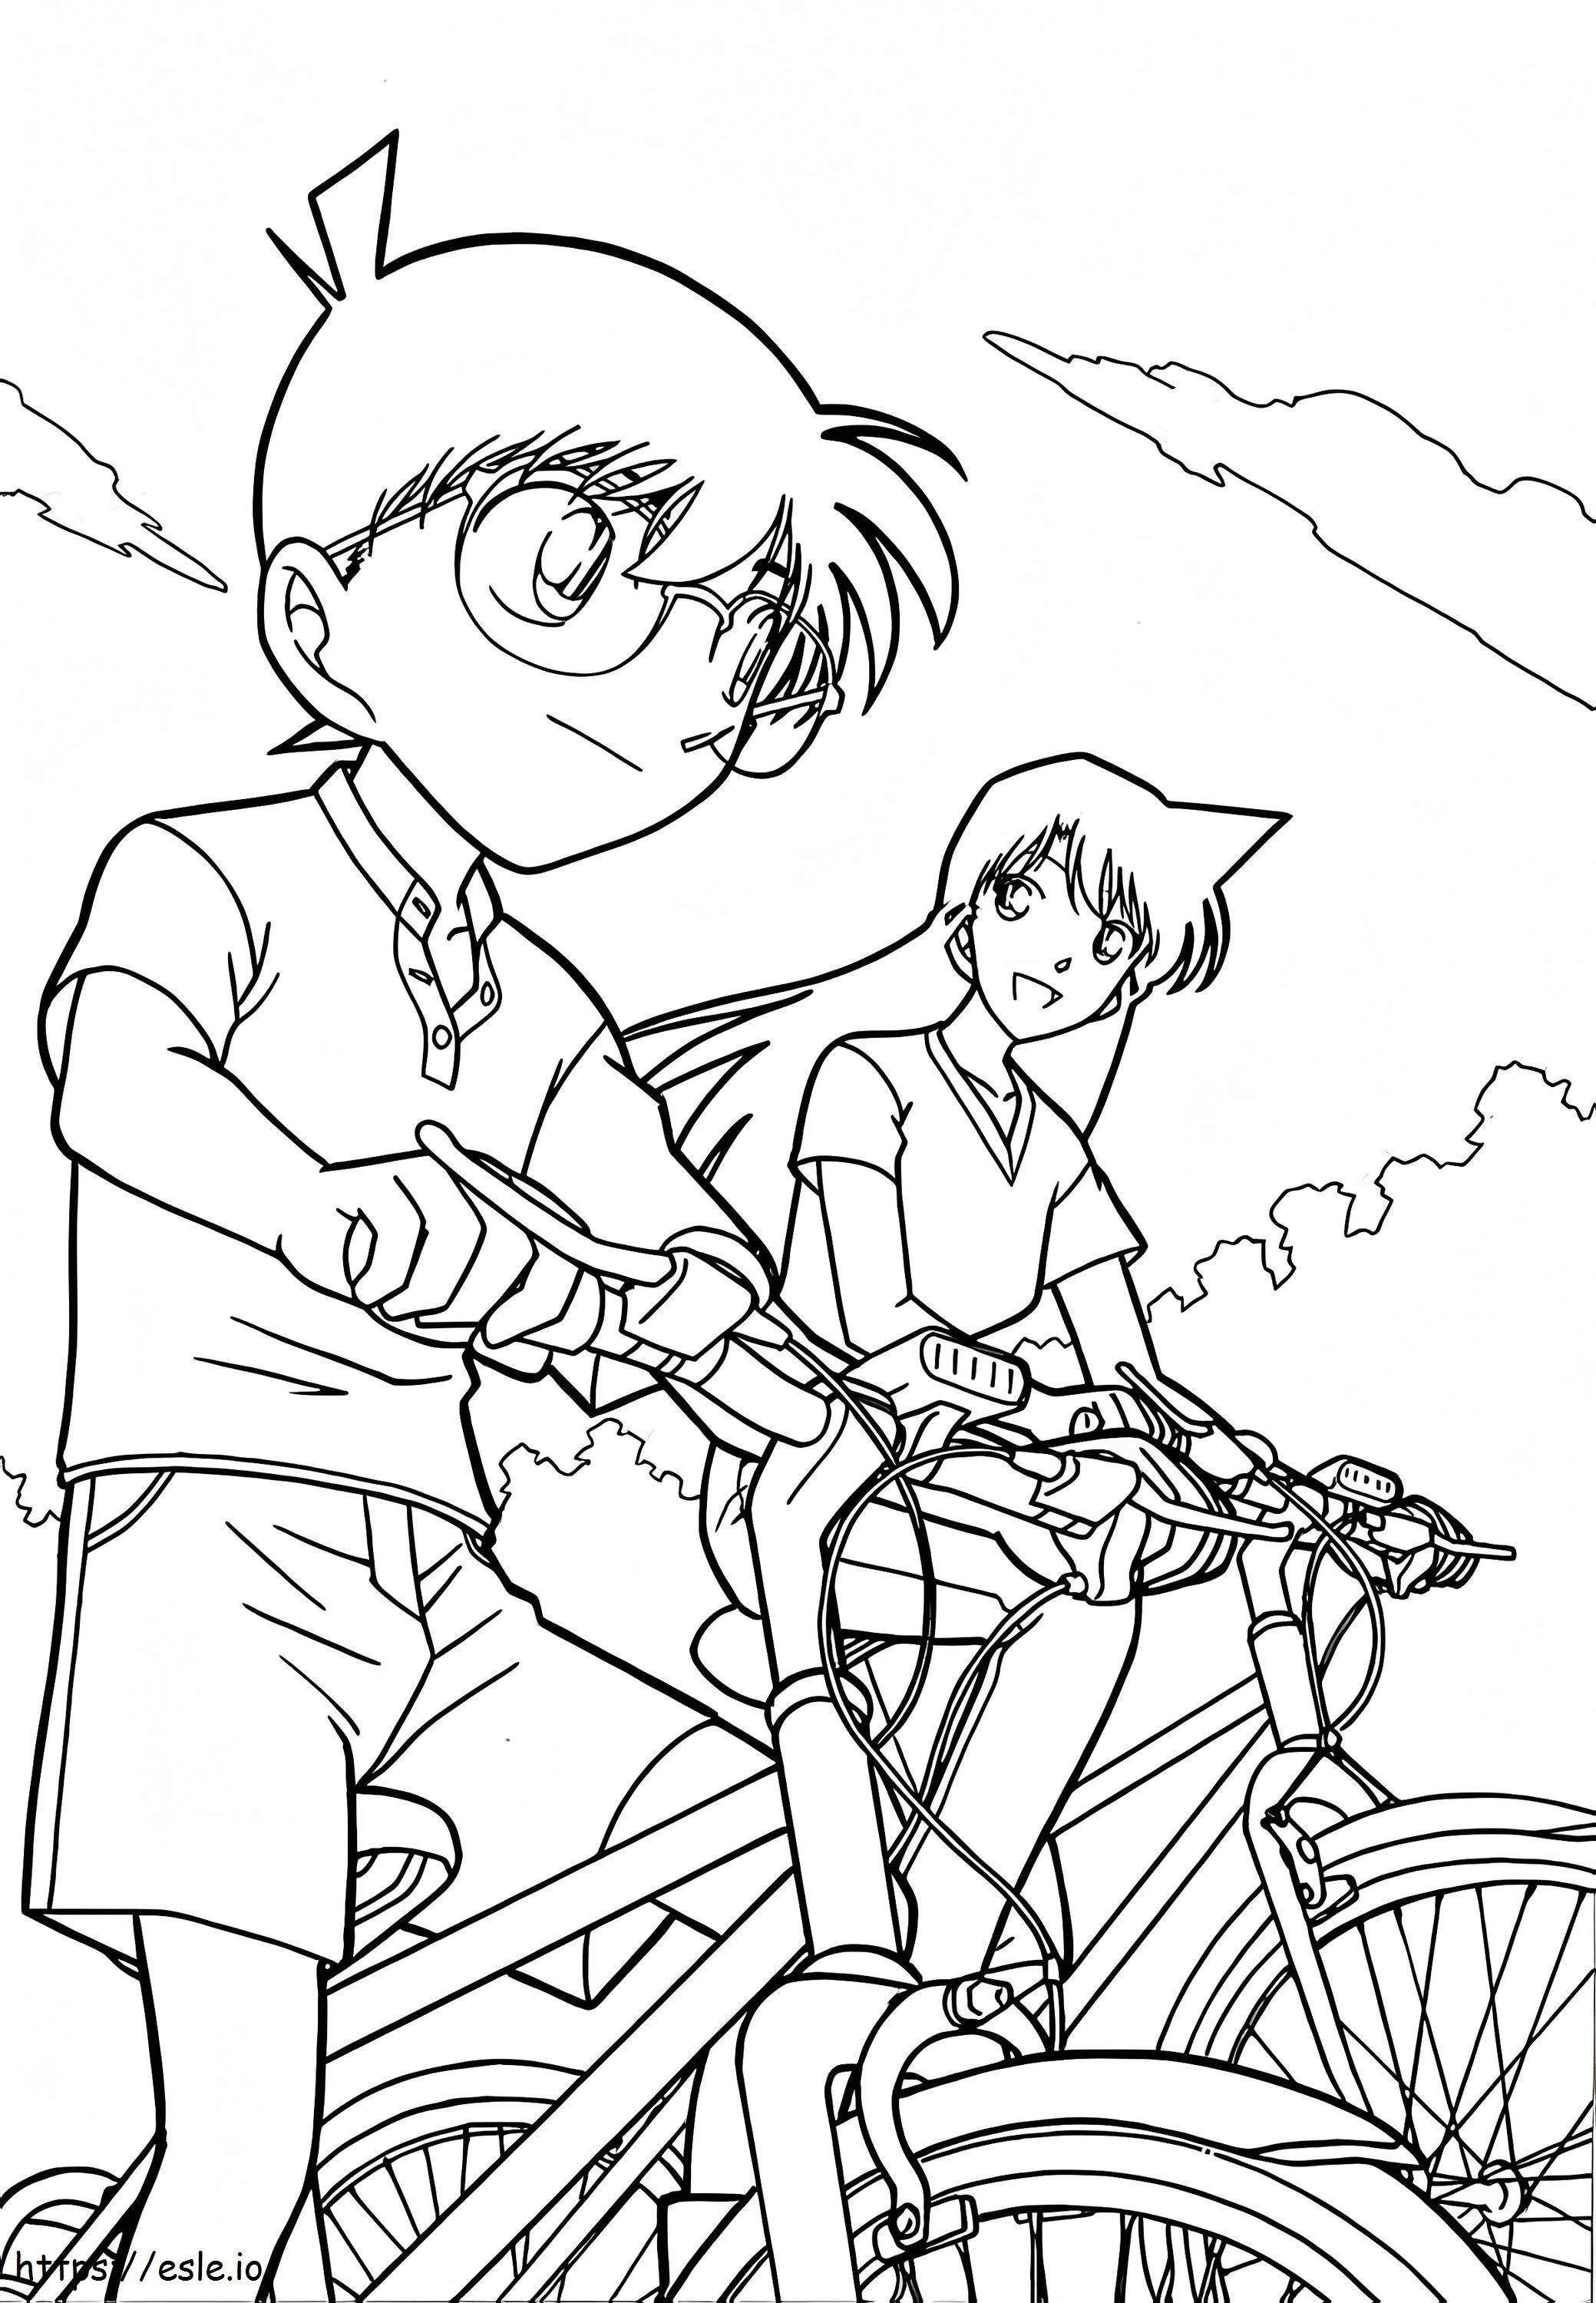 Conan merge pe bicicletă cu Ran de colorat